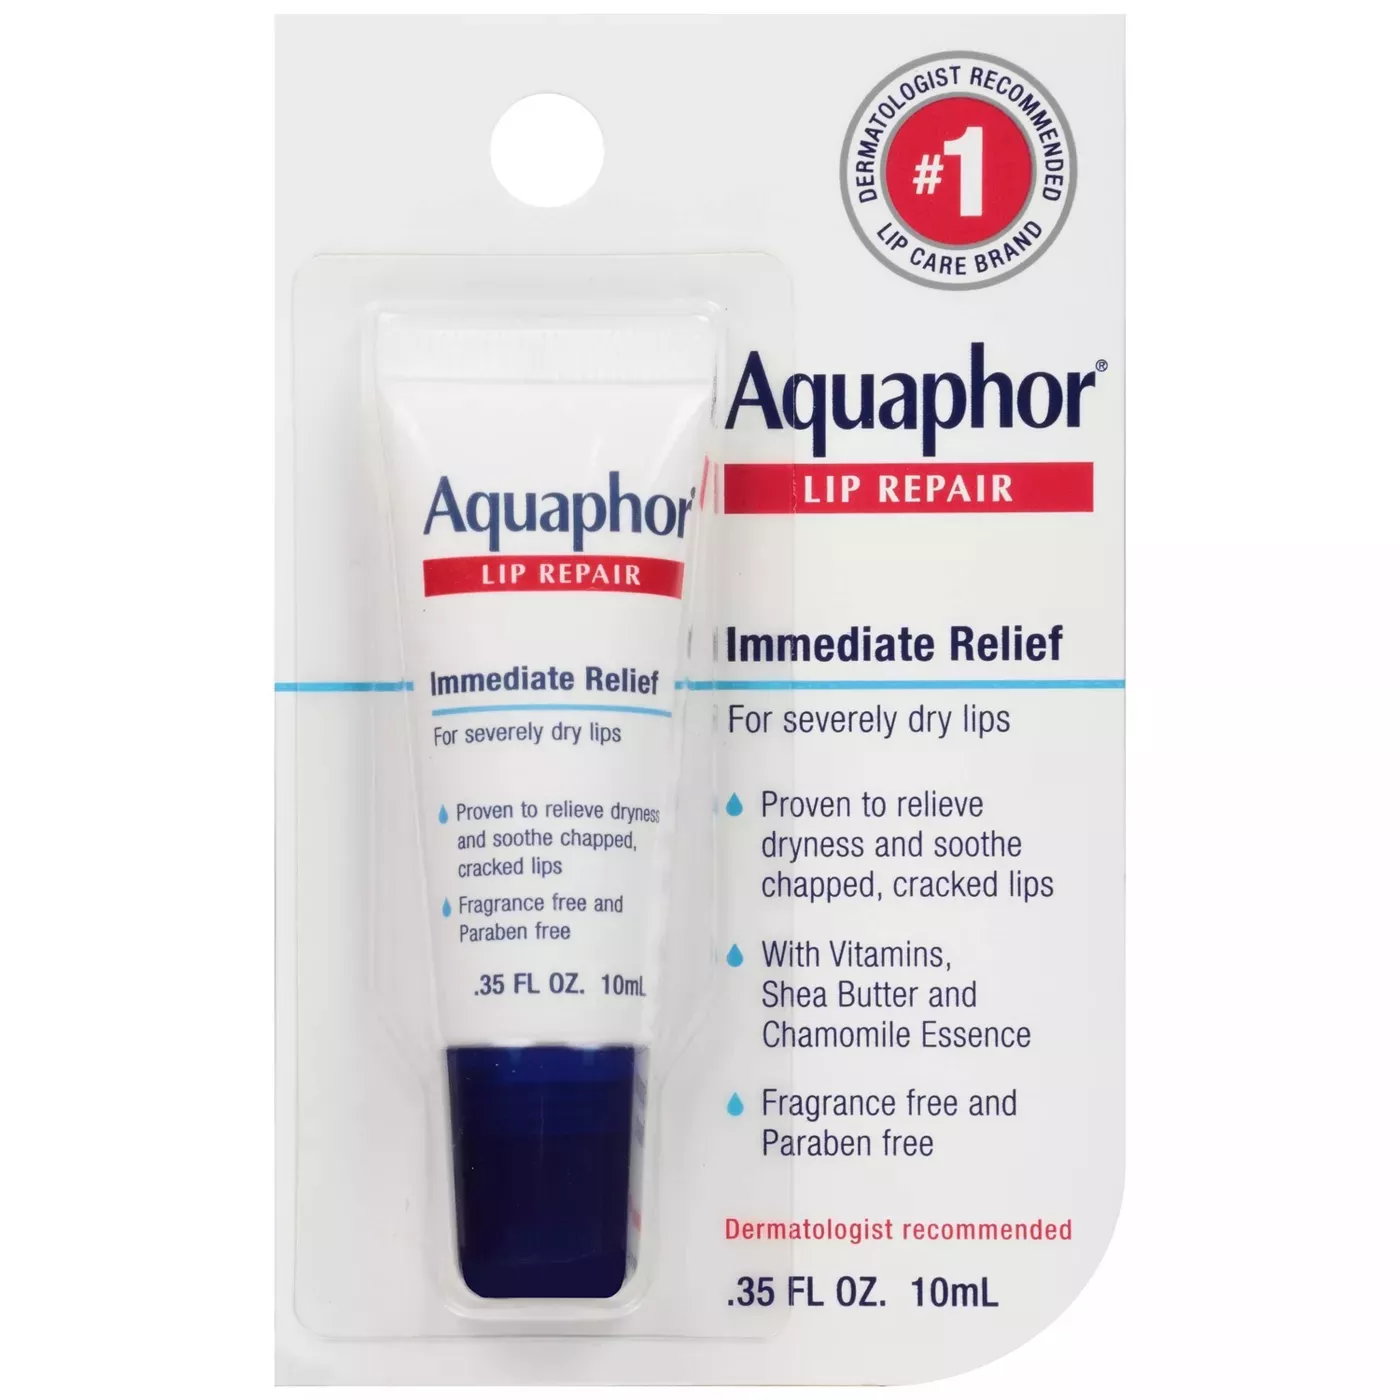 Package of Aquaphor Lip Repair